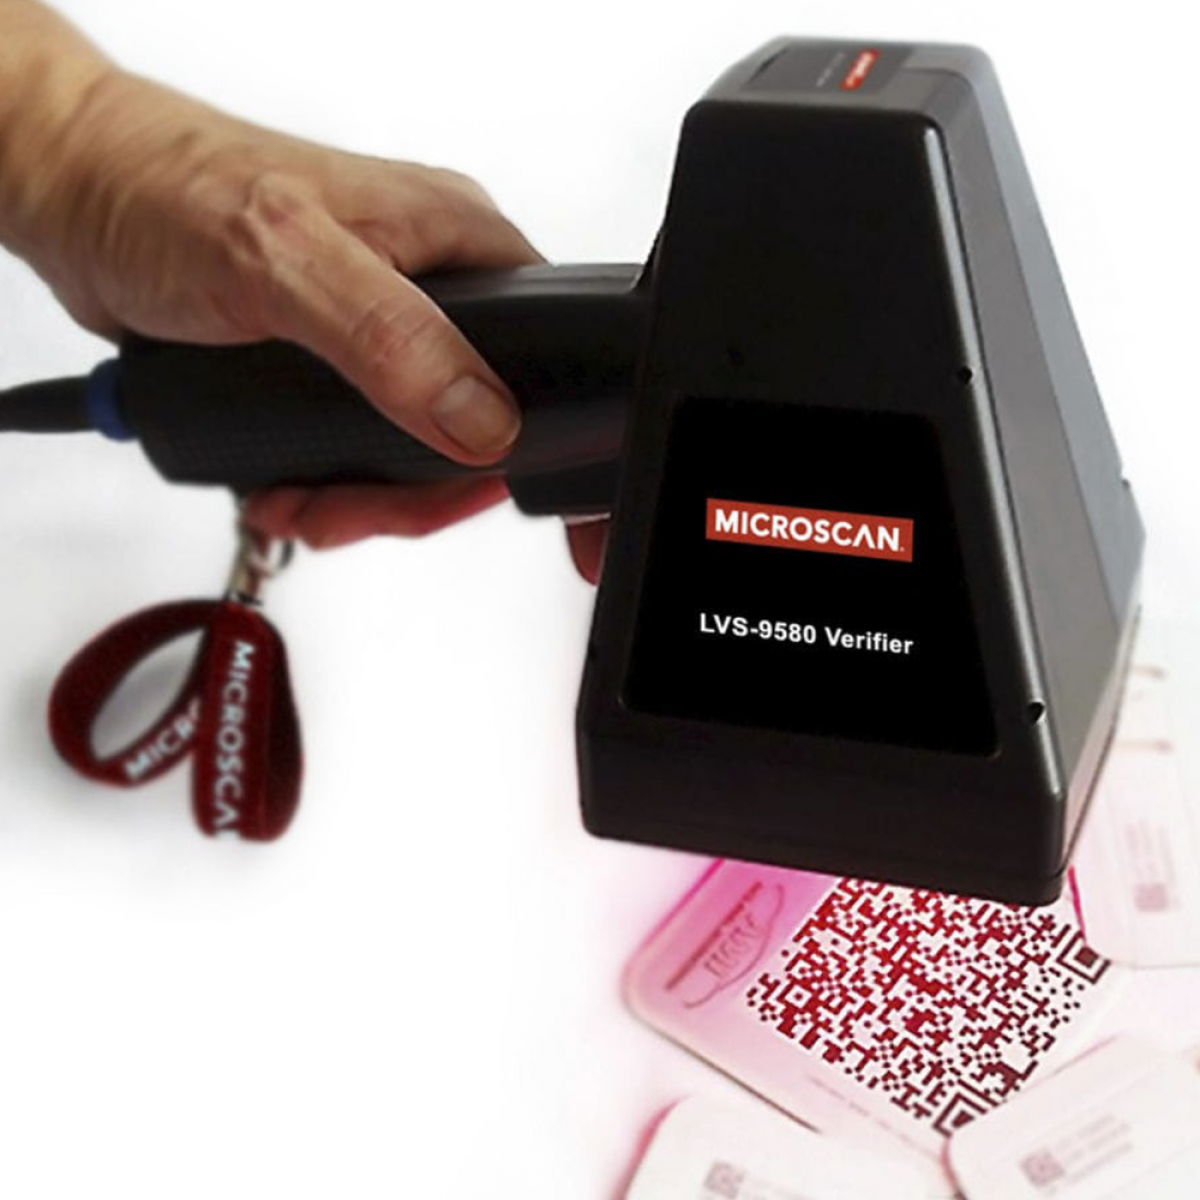 Microscan LVS-9850 portable barcode verifier